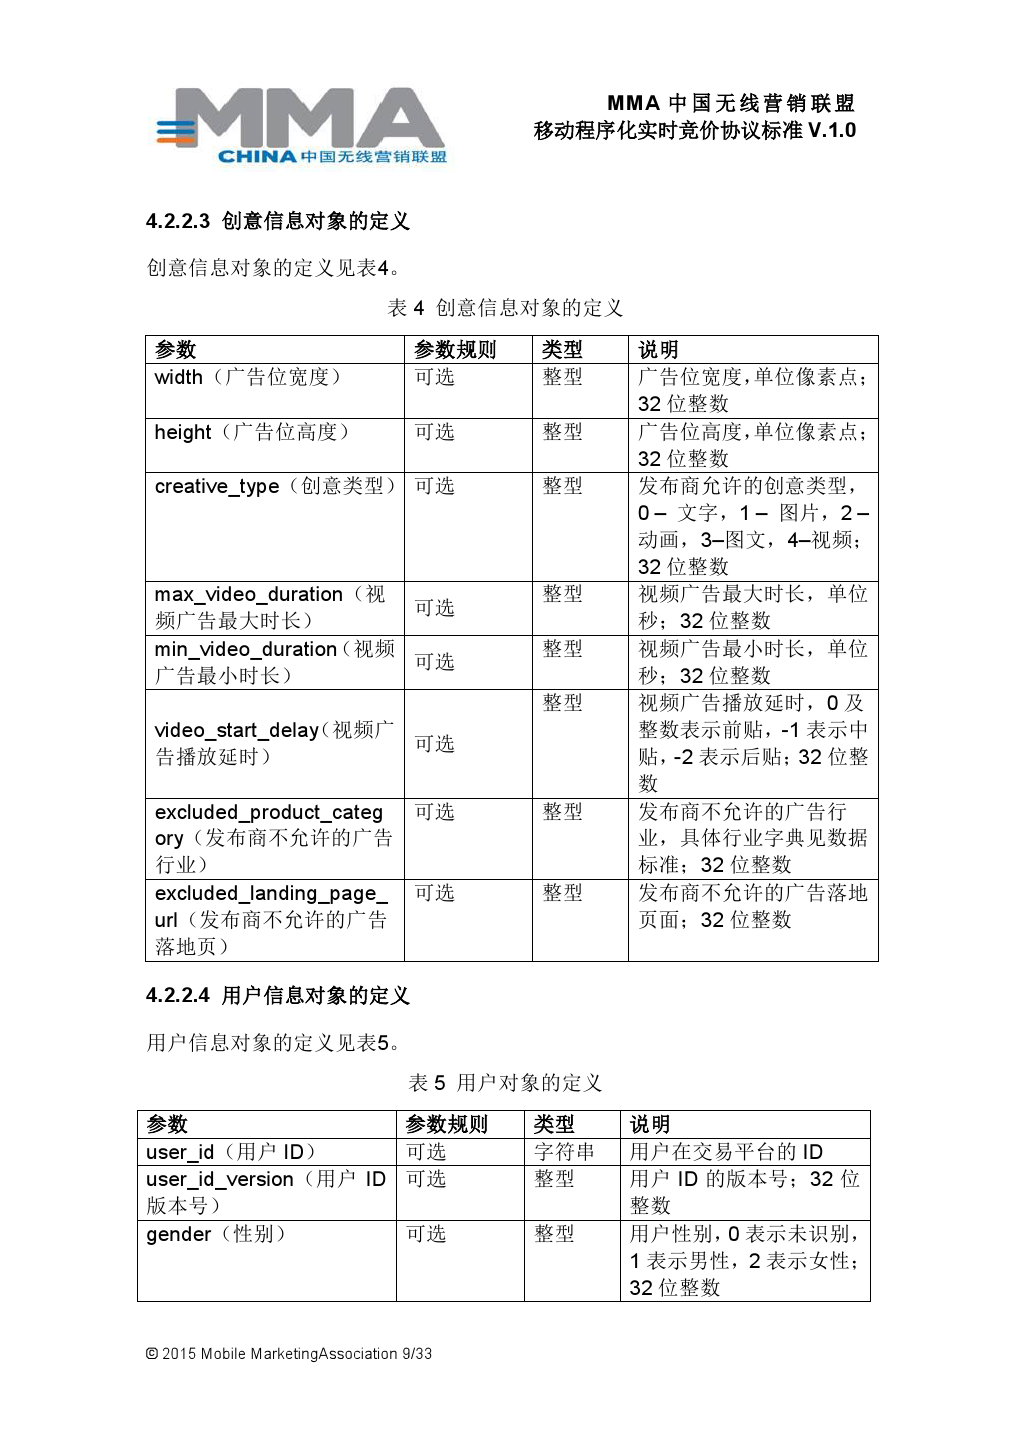 MMA中国无线营销联盟移动程序化实时竞价协议标准V.1.0_000010